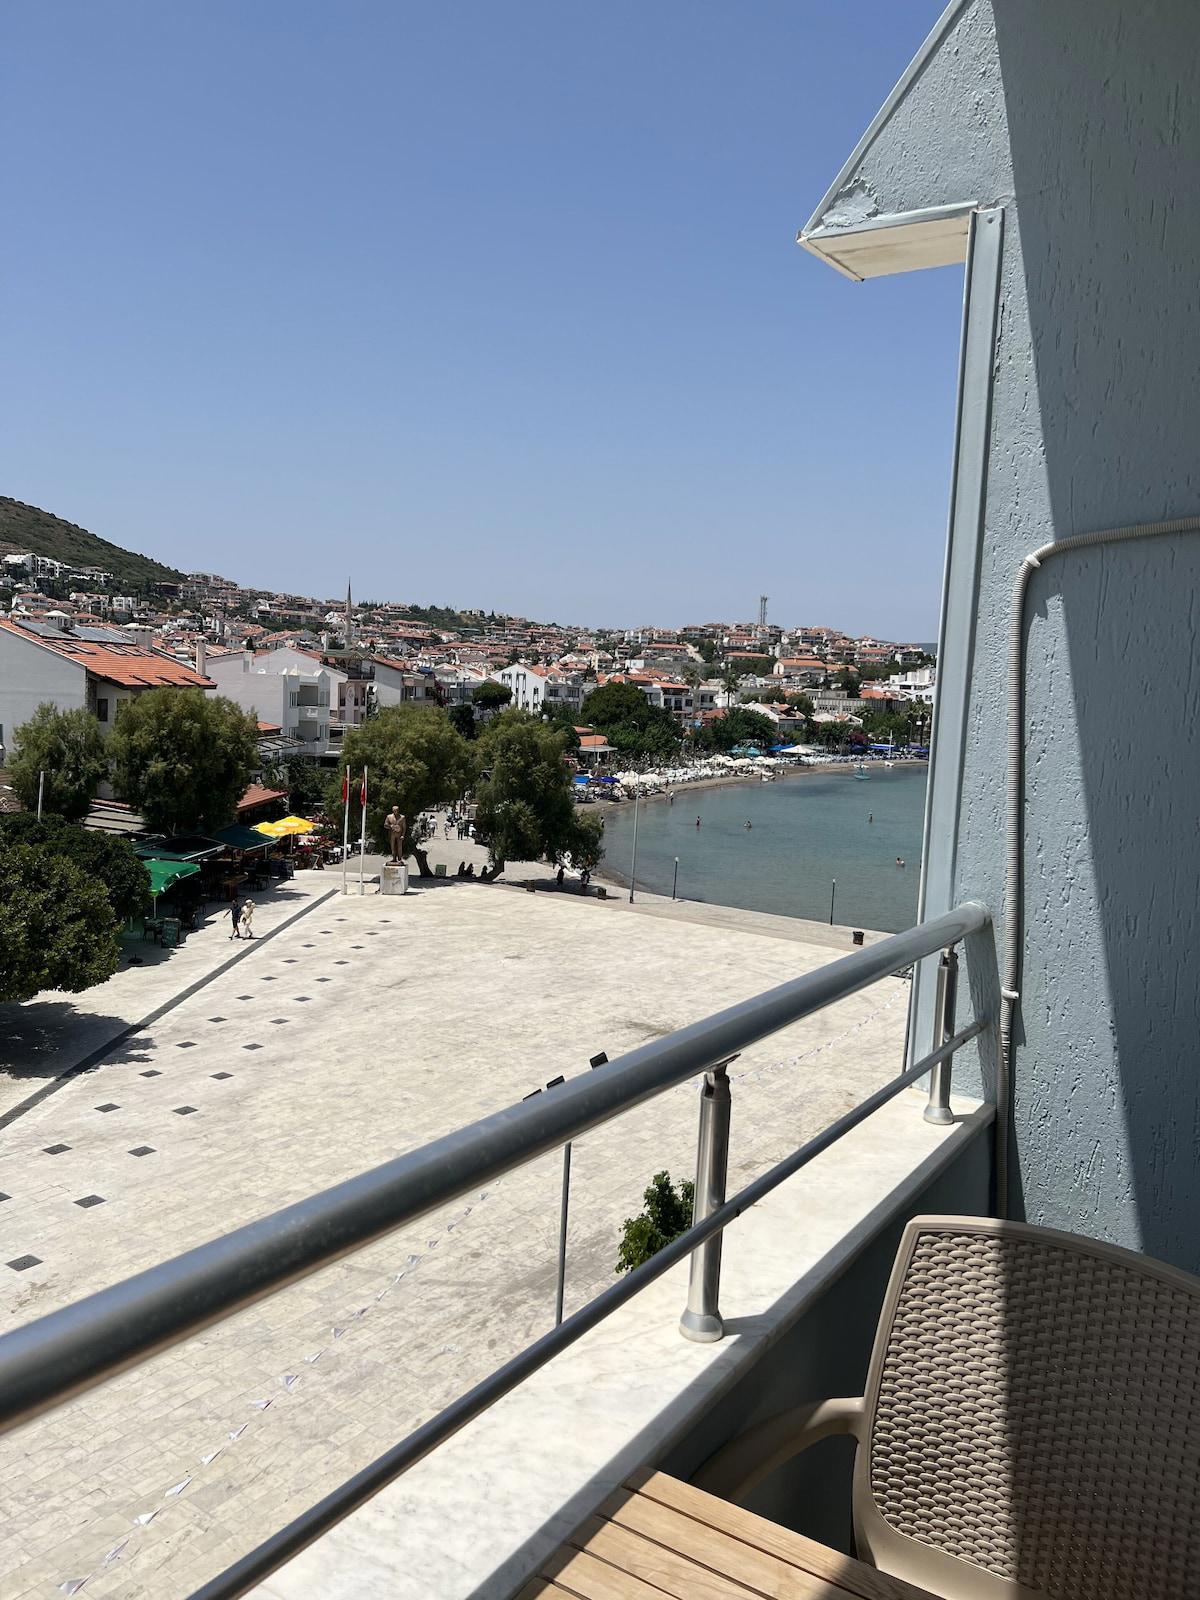 Datça Deniz Hotel